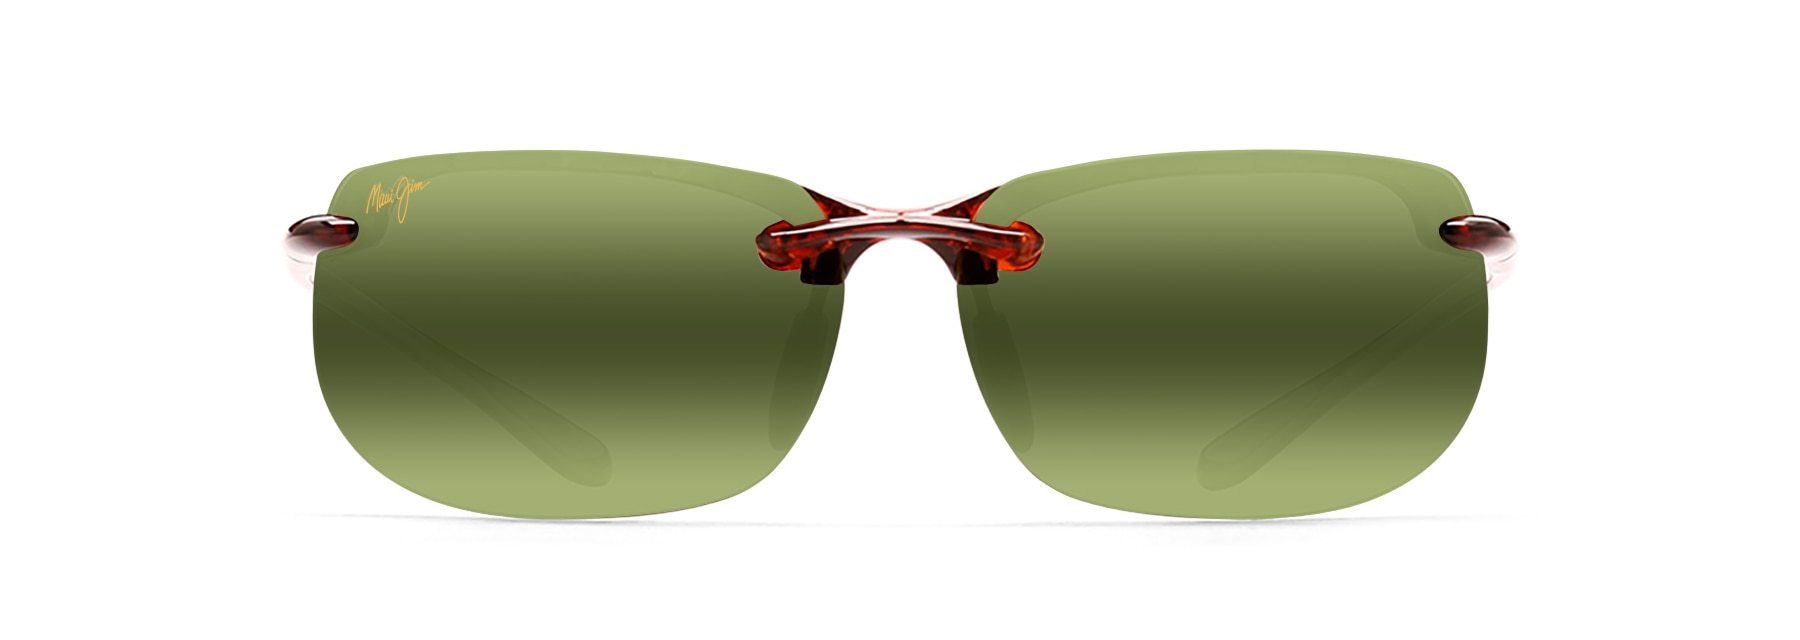 MyMaui Banyans MM412-003 Sunglasses